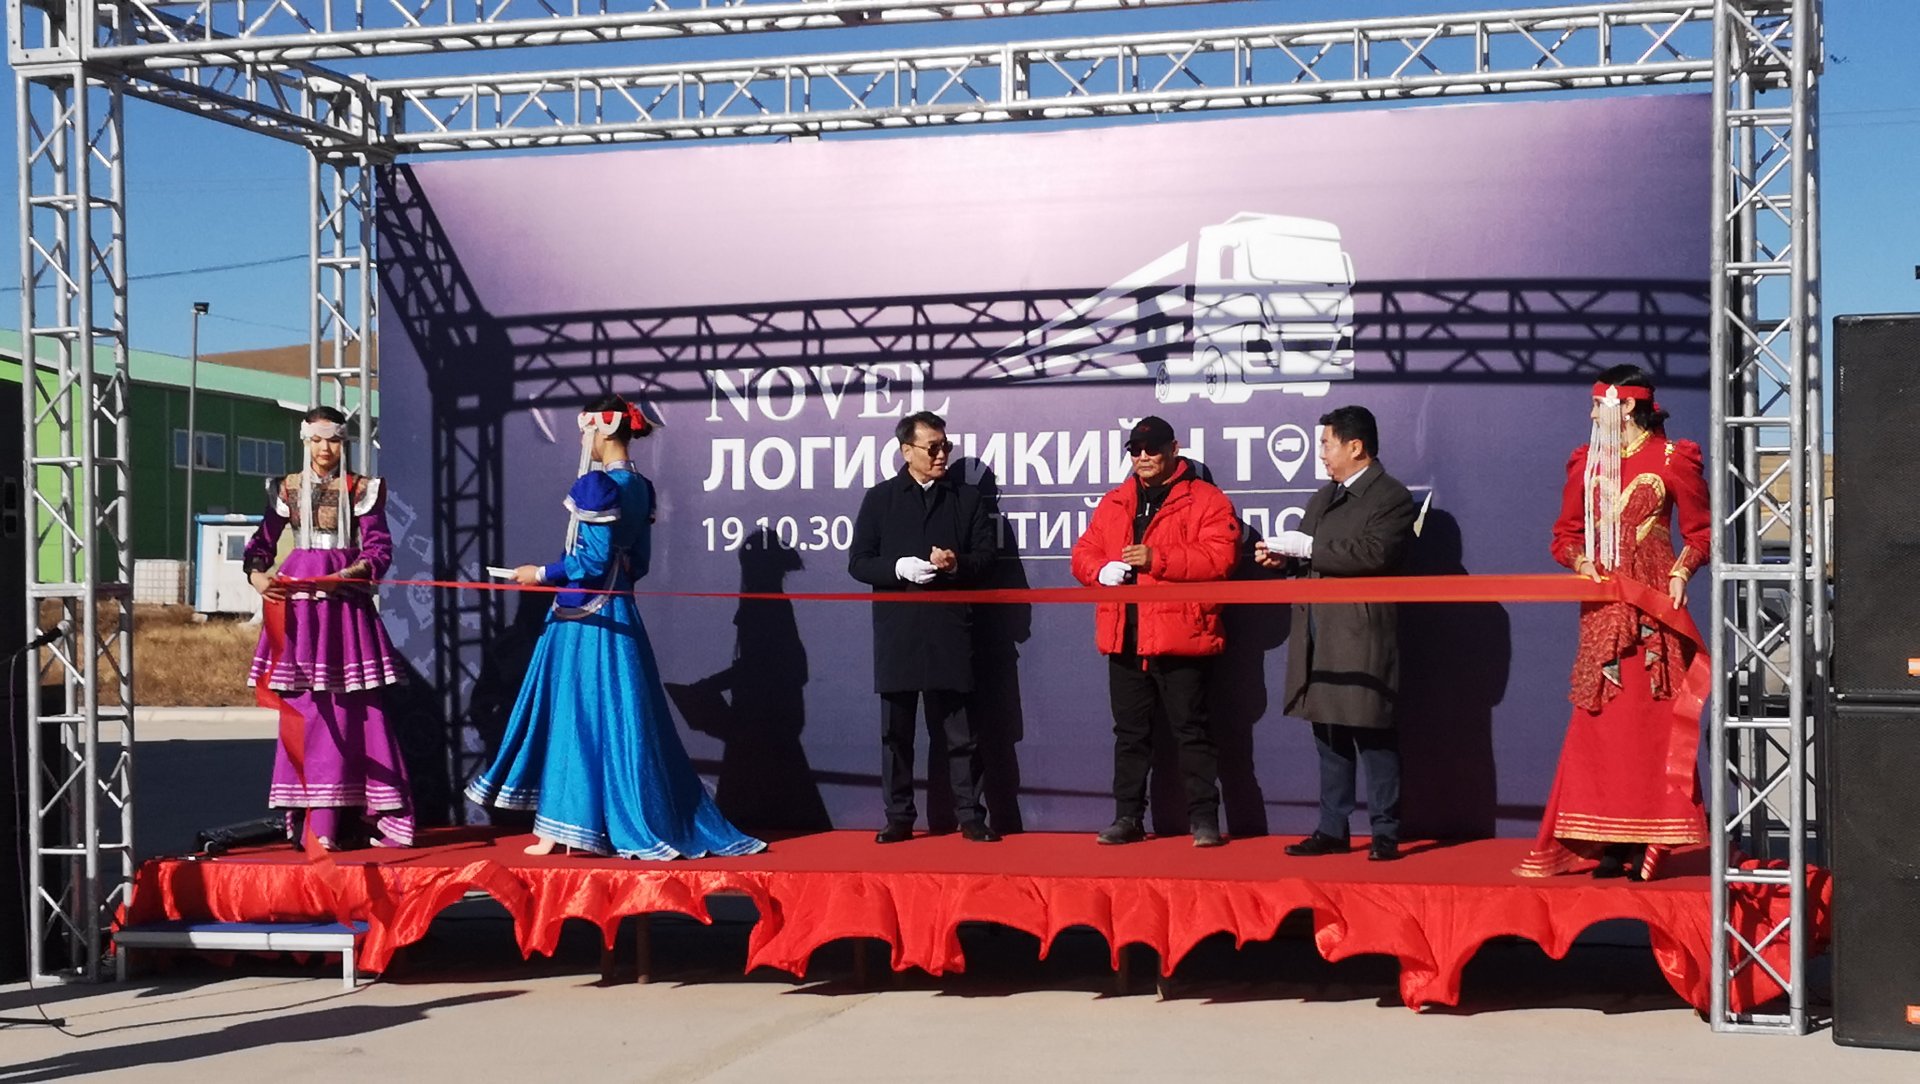 Монголын анхны авто трак зогсоол бүхий Логистикийн төв нээгдлээ